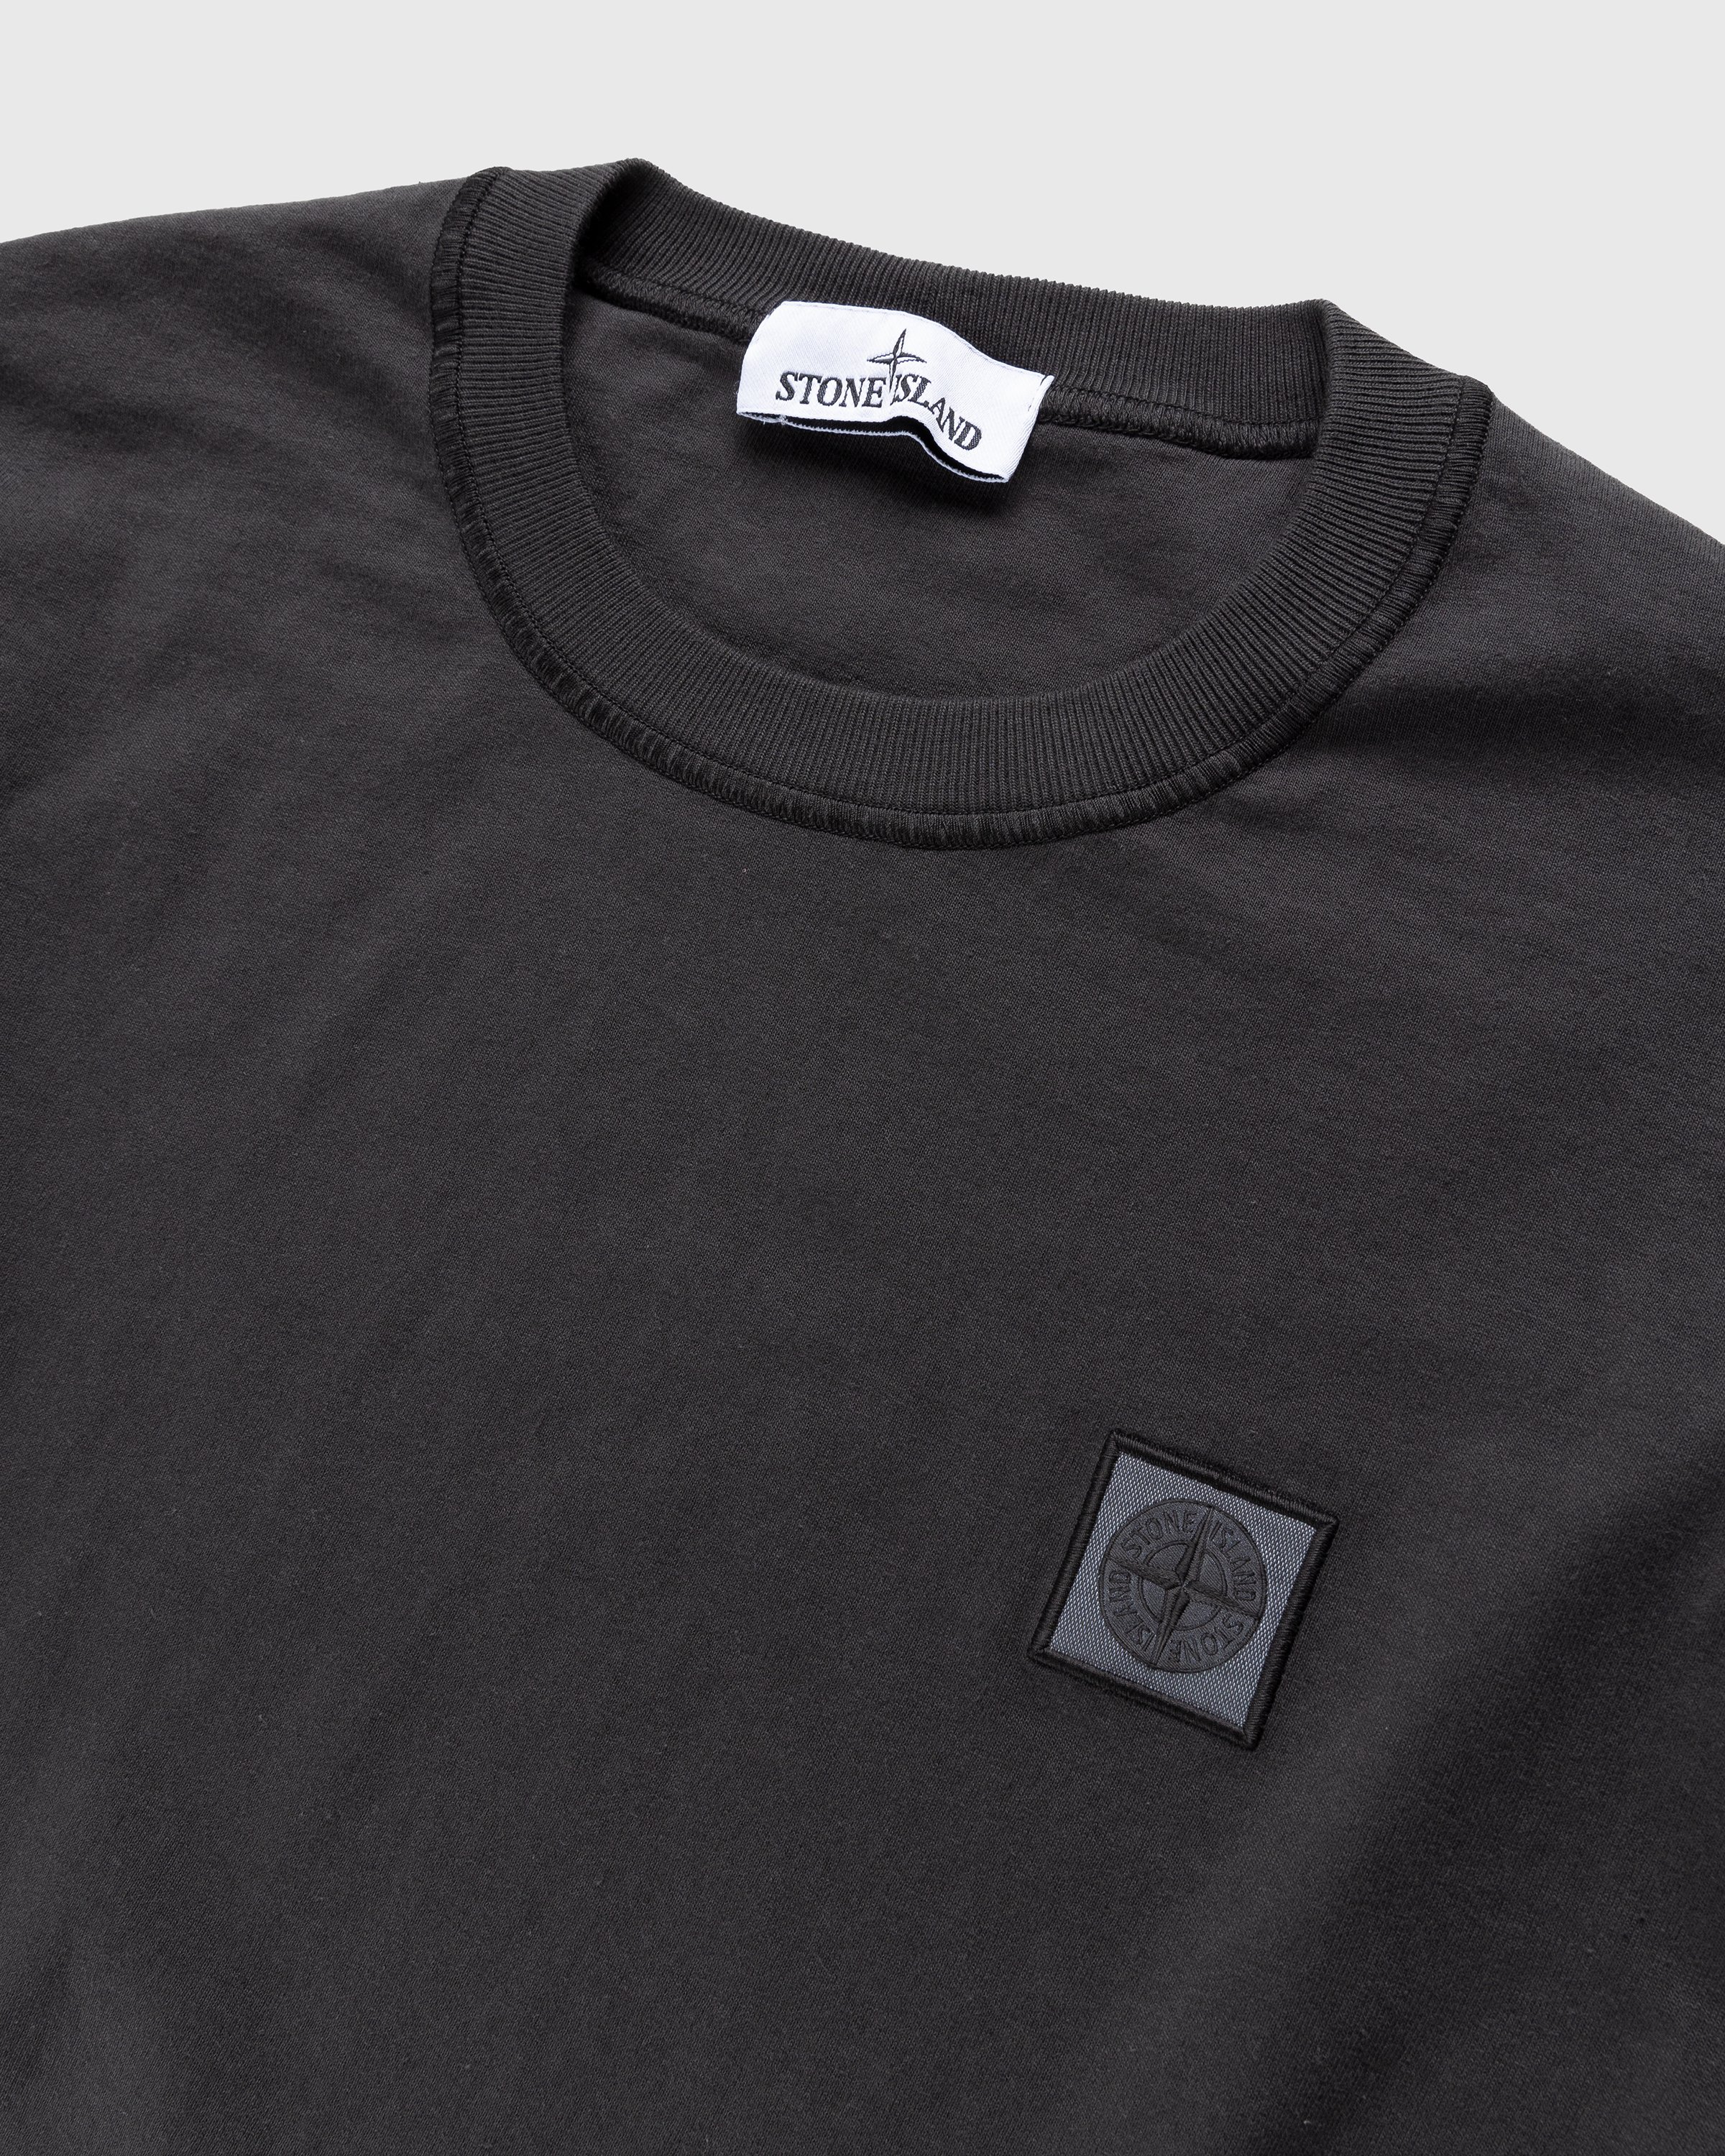 Stone Island - Fissato Longsleeve T-Shirt Charcoal - Clothing - Grey - Image 3